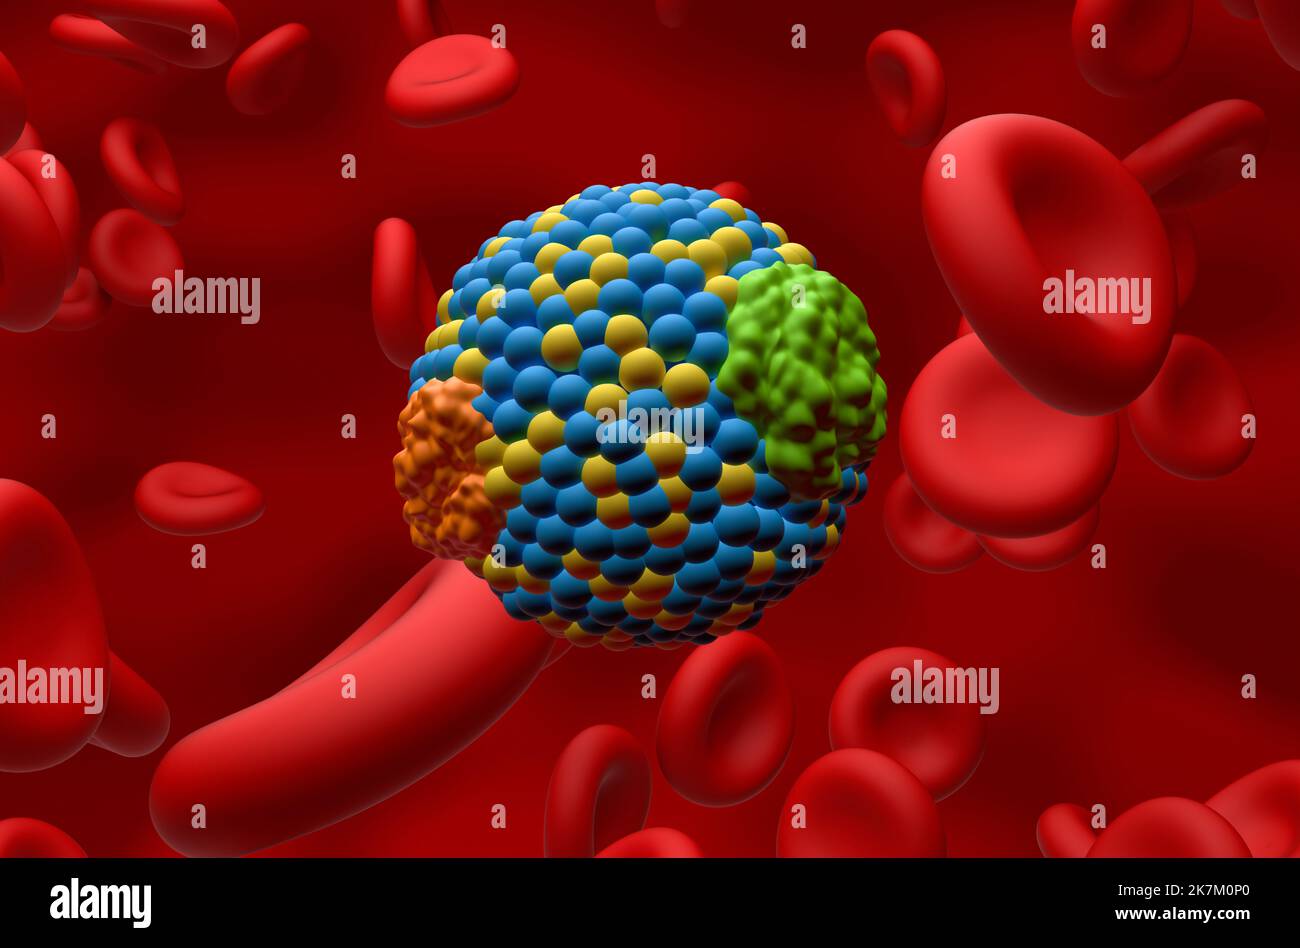 LDL colesterolo lipoproteico cattivo nel flusso sanguigno Closeup view 3D illustrazione Foto Stock